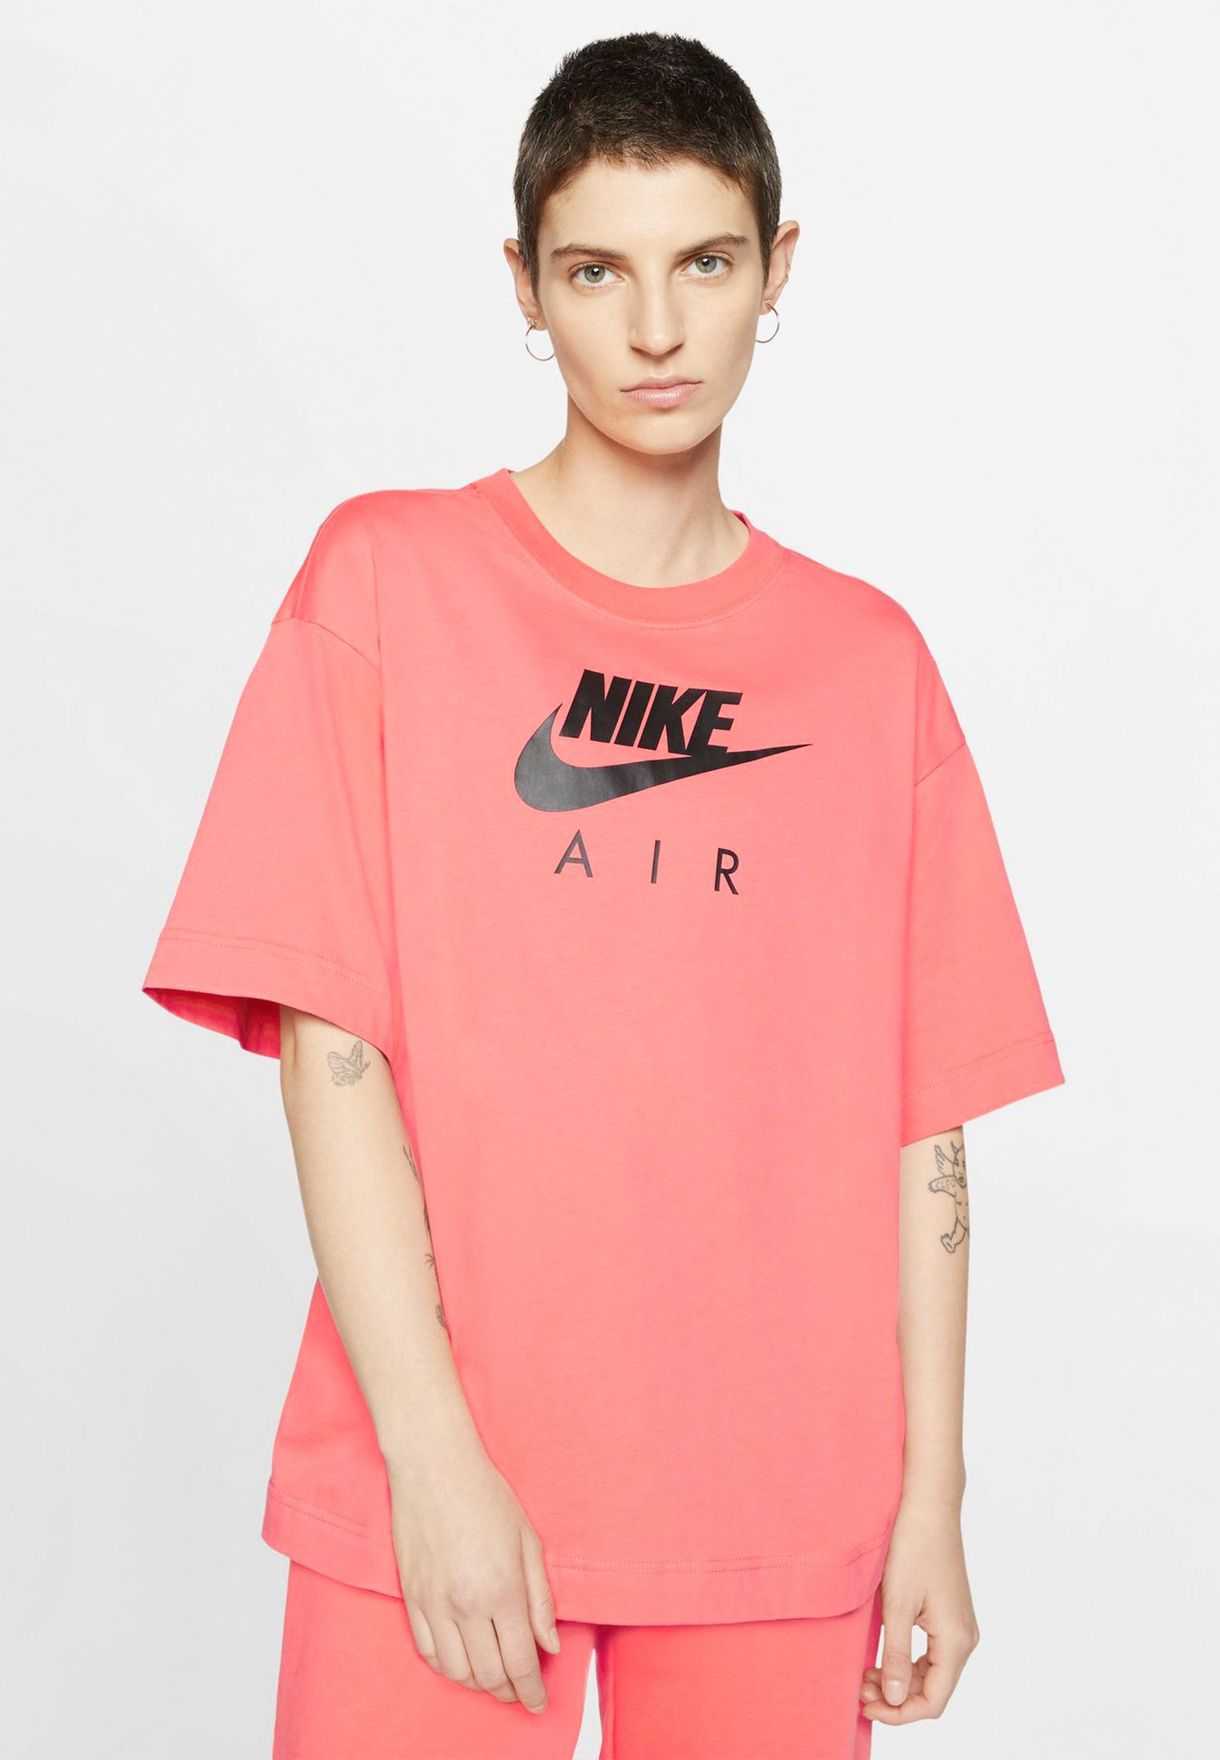 nike air shirts womens